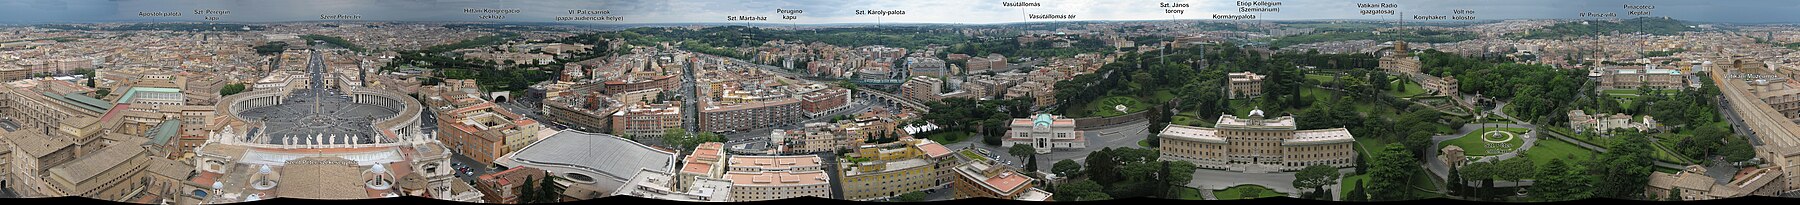 A Vatikán és Róma 360 fokos panorámaképe a Szent-Péter bazilika tetejéről, magyar nyelvű feliratokkal